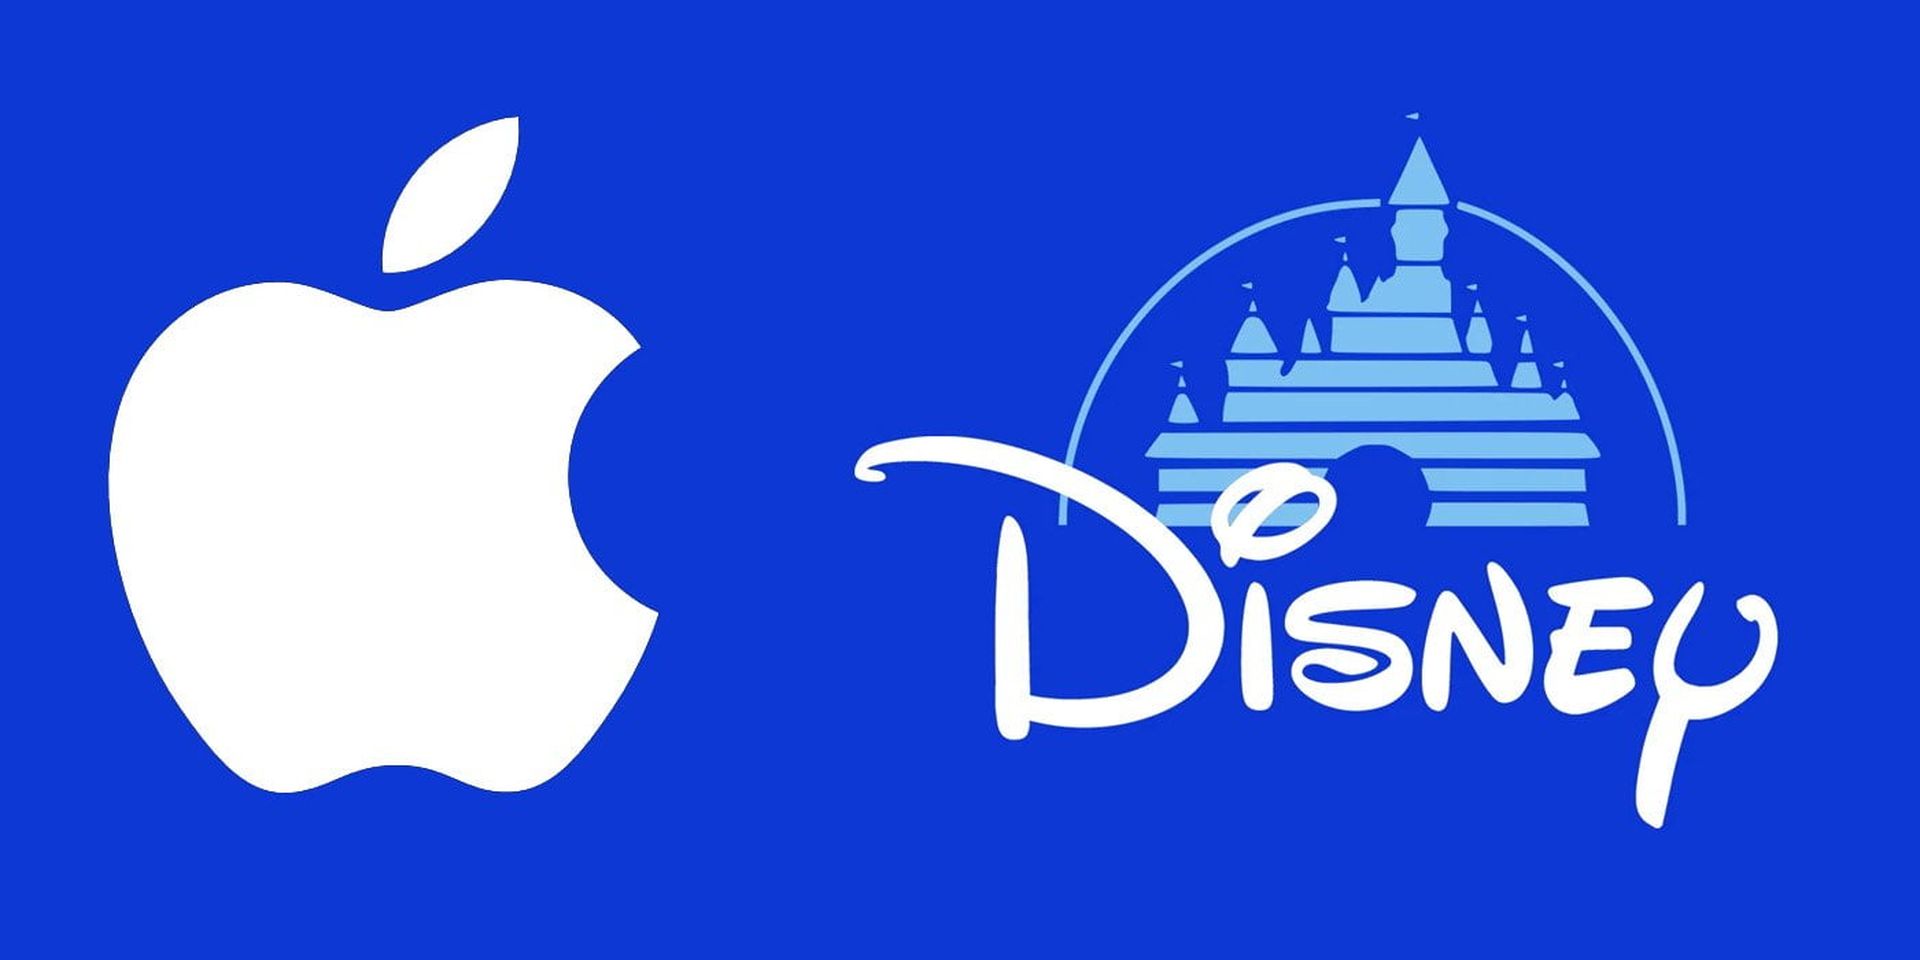 Были предположения, что Apple покупает Disney с тех пор, как Disney приобрела Pixar Animation Studios в 2006 году. Теперь, когда Боб Айгер вернулся к власти, есть...